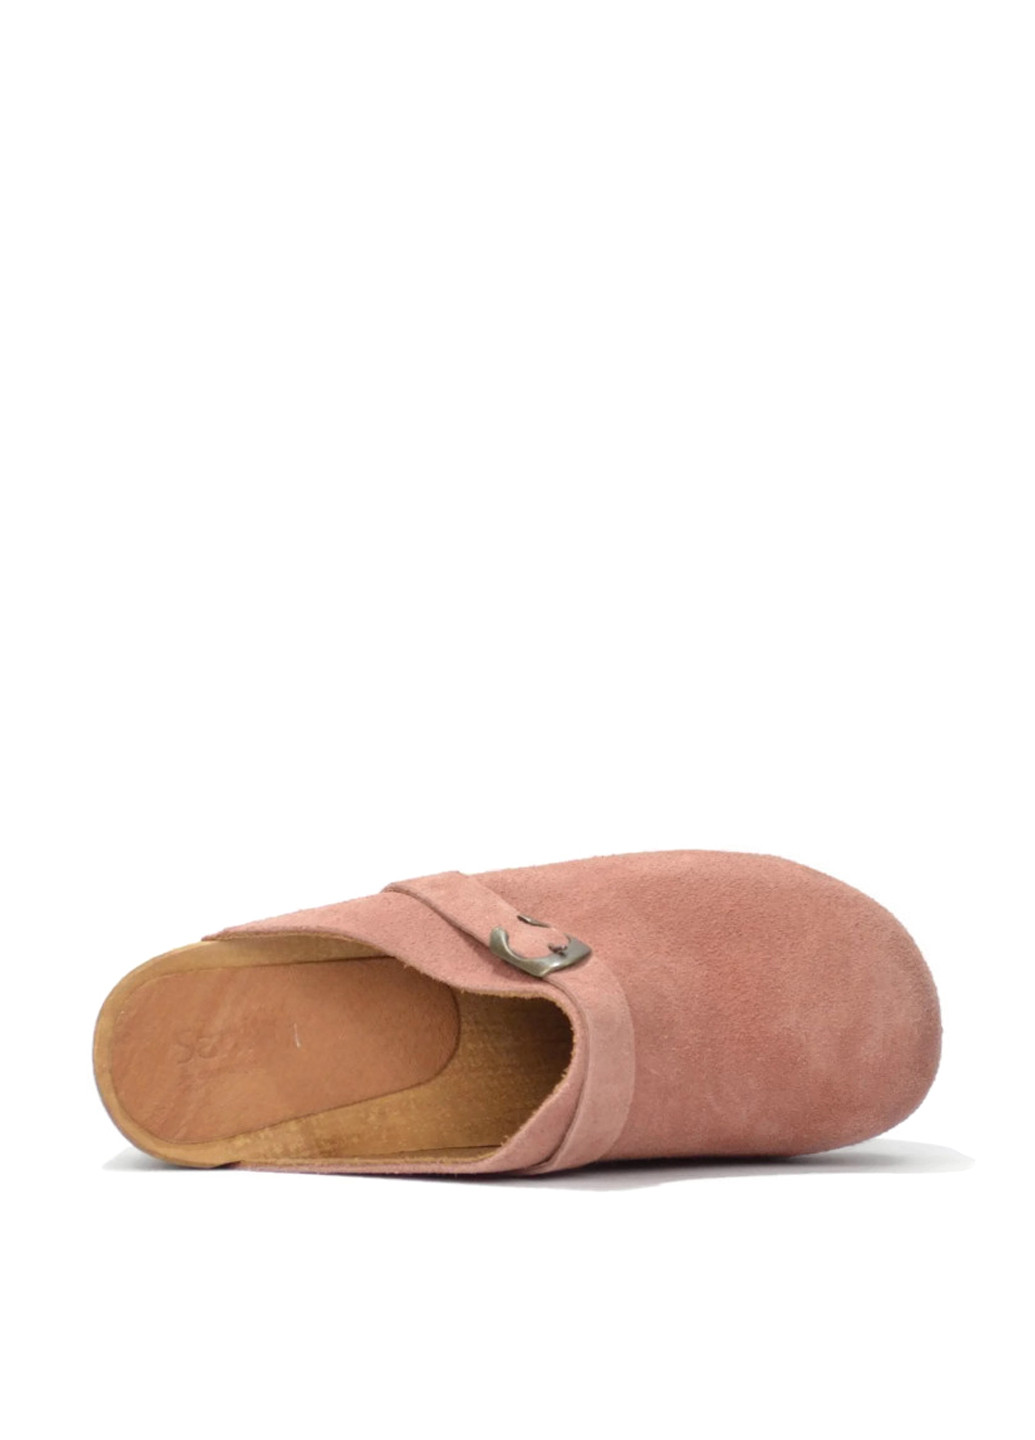 Розовые сабо Sanita на среднем каблуке с пряжкой